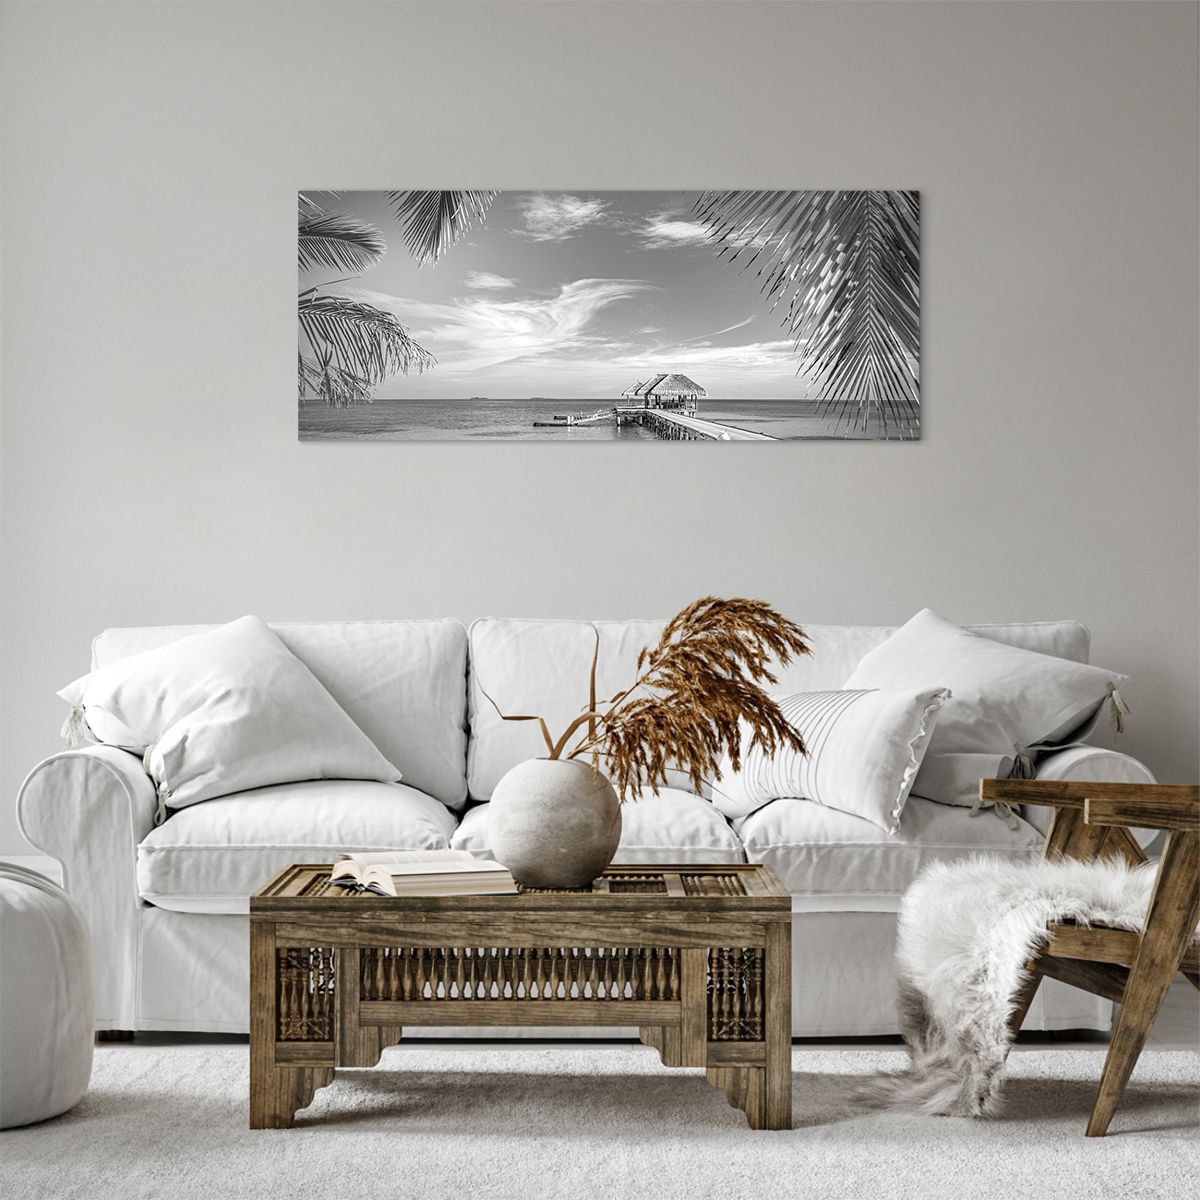 Bild auf Leinwand Meereslandschaft, Bild auf Leinwand Strand, Bild auf Leinwand Holzsteg, Bild auf Leinwand Kokusnuss-Palme, Bild auf Leinwand Schwarz Und Weiß